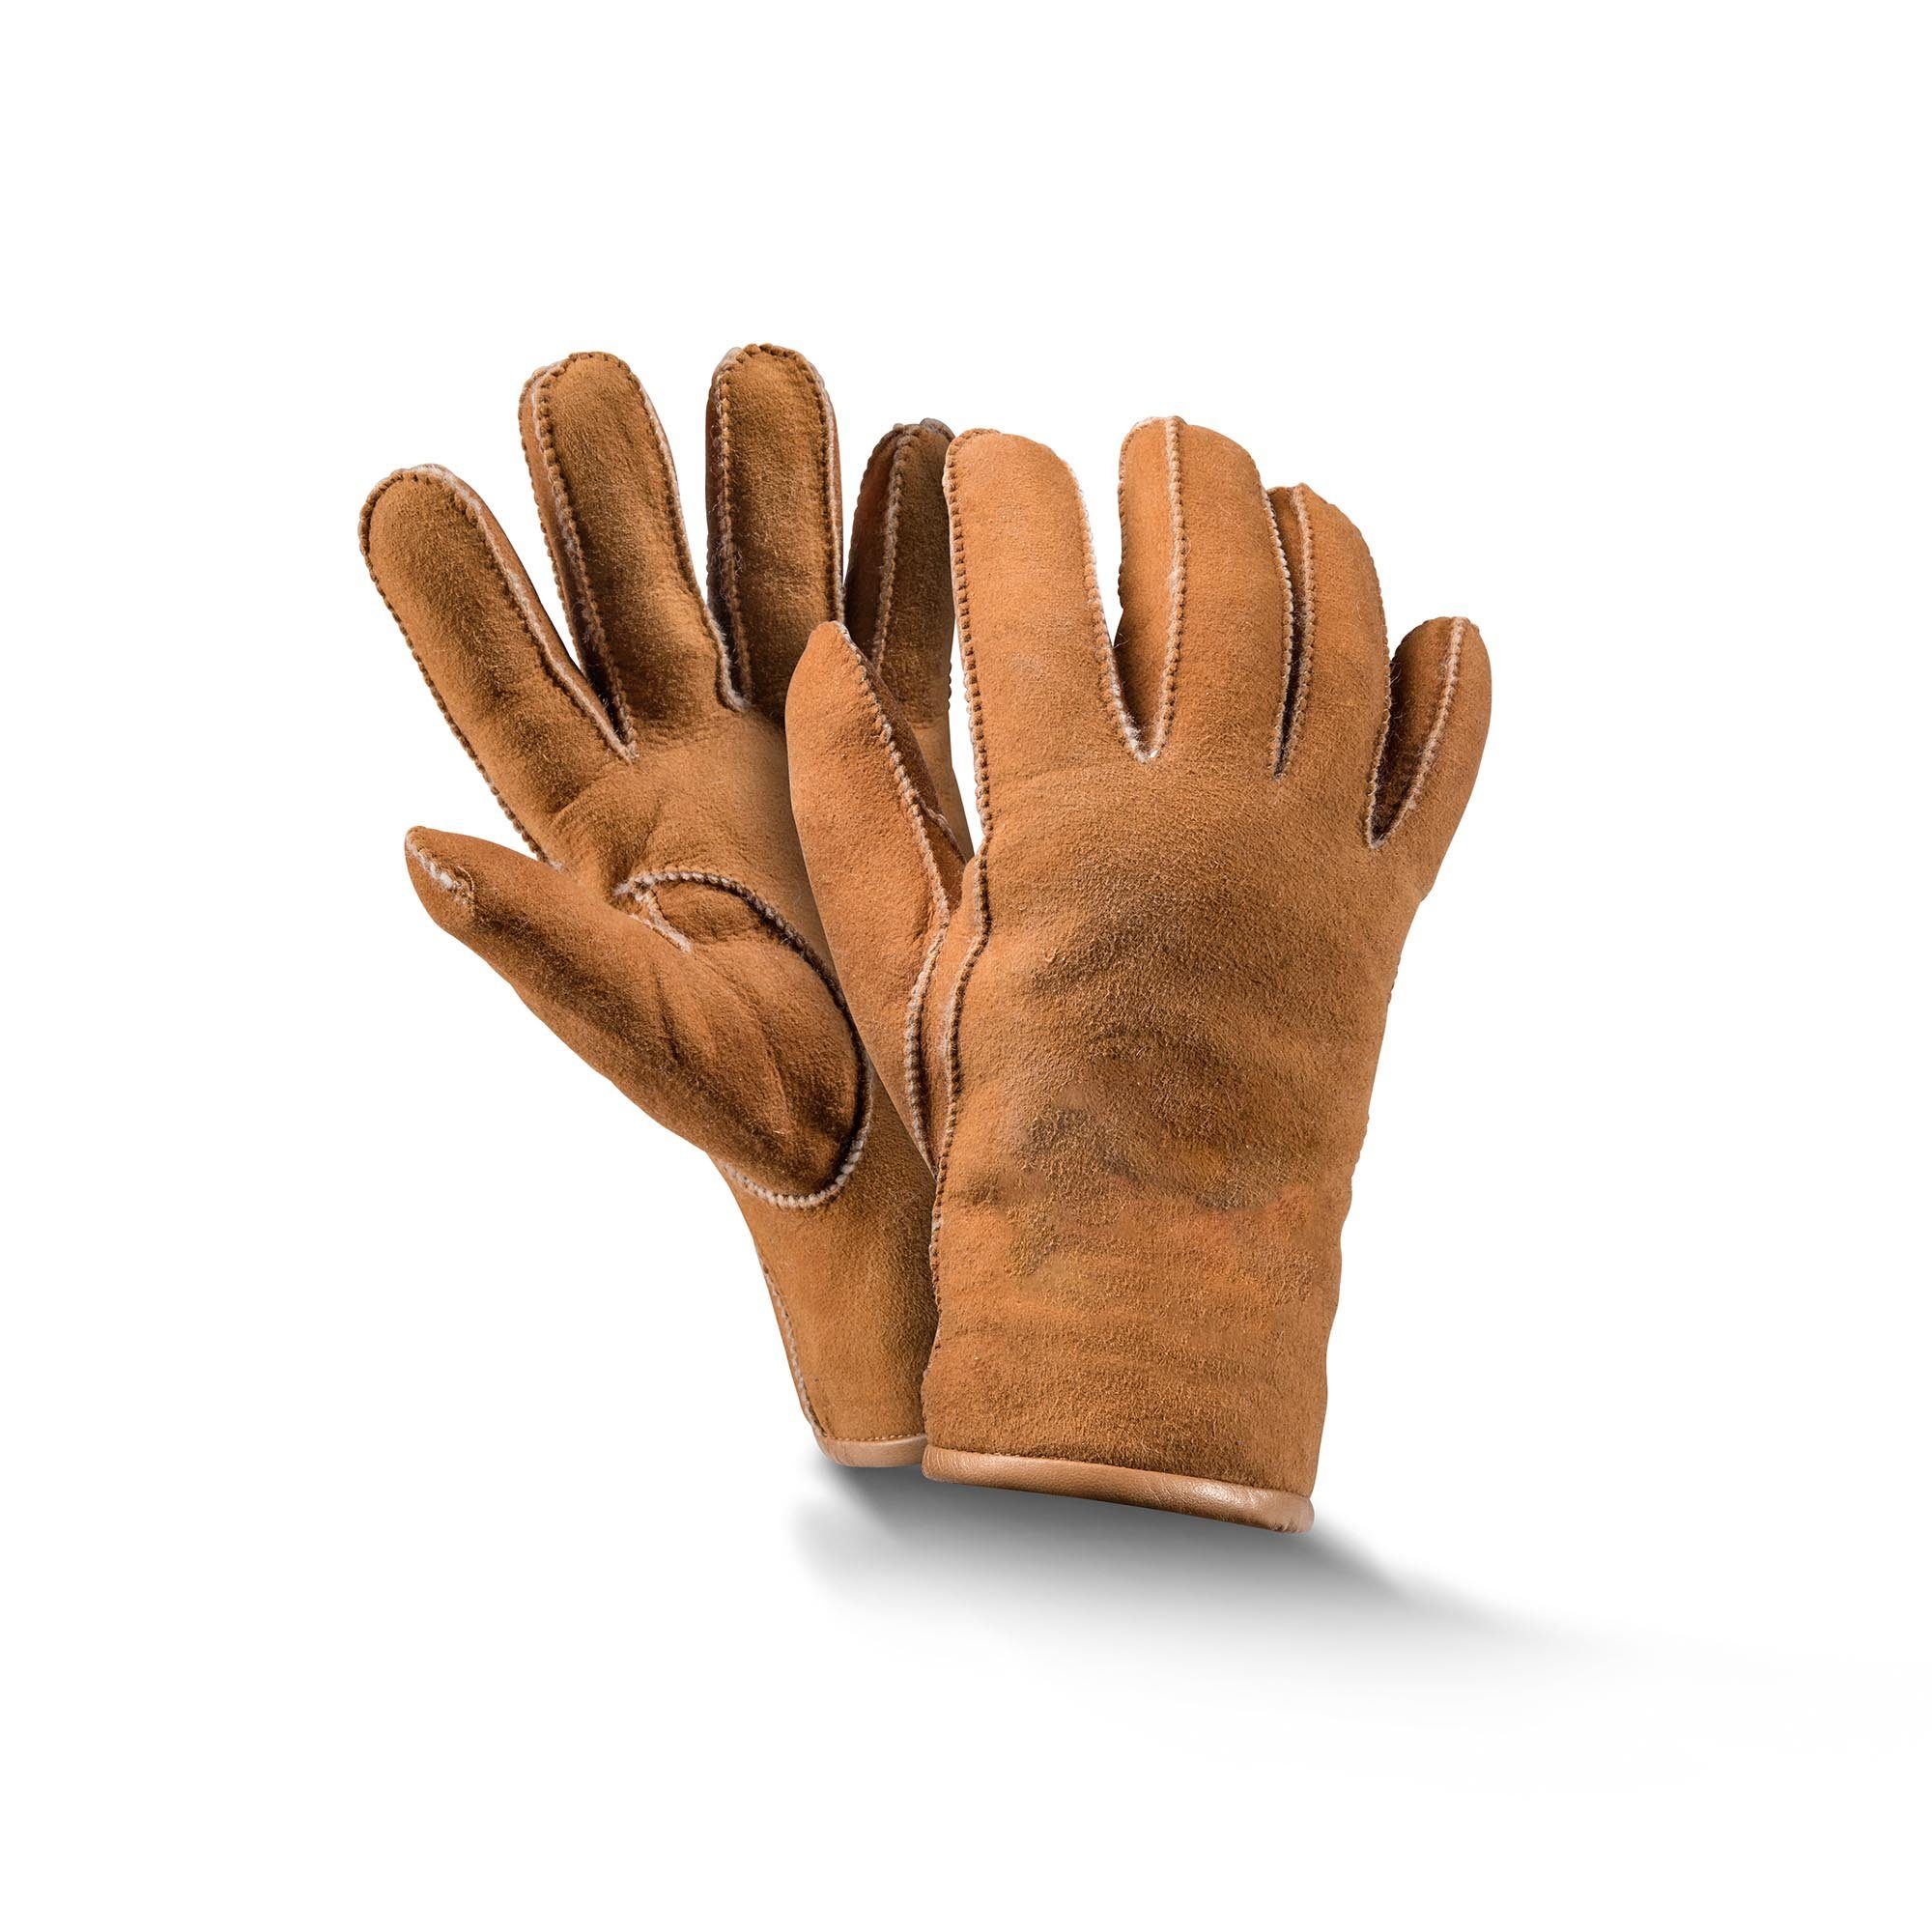 Fellhof Baumwollhandschuhe Handschuhe Fingerhandschuhe Basic schwarz/ braun/ grau Gr 6-10